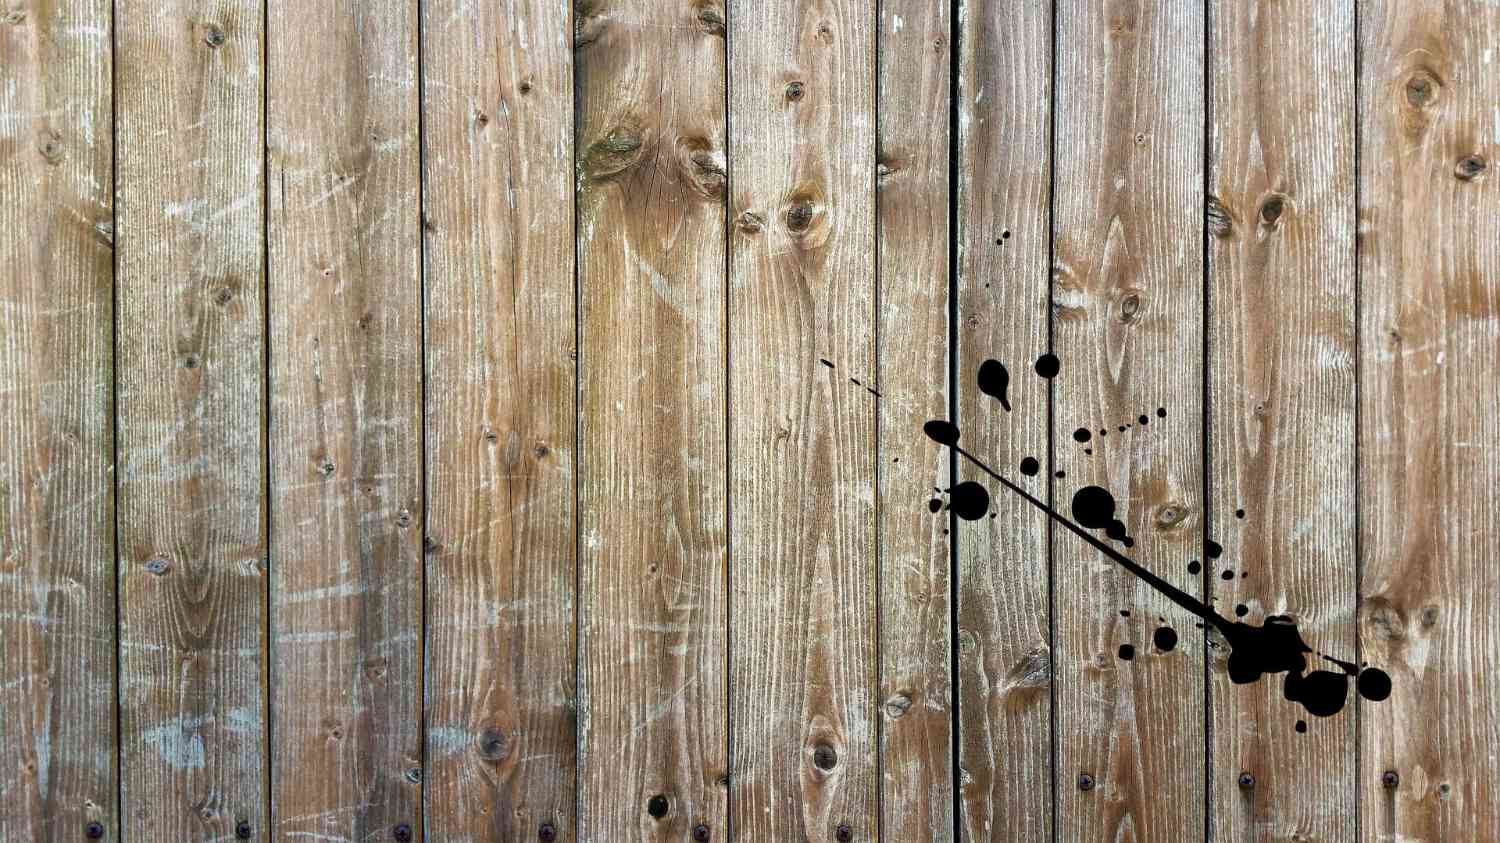 Hintergrund von mareikefröhlich.de - Holzlatten mit einem Tintenklecks